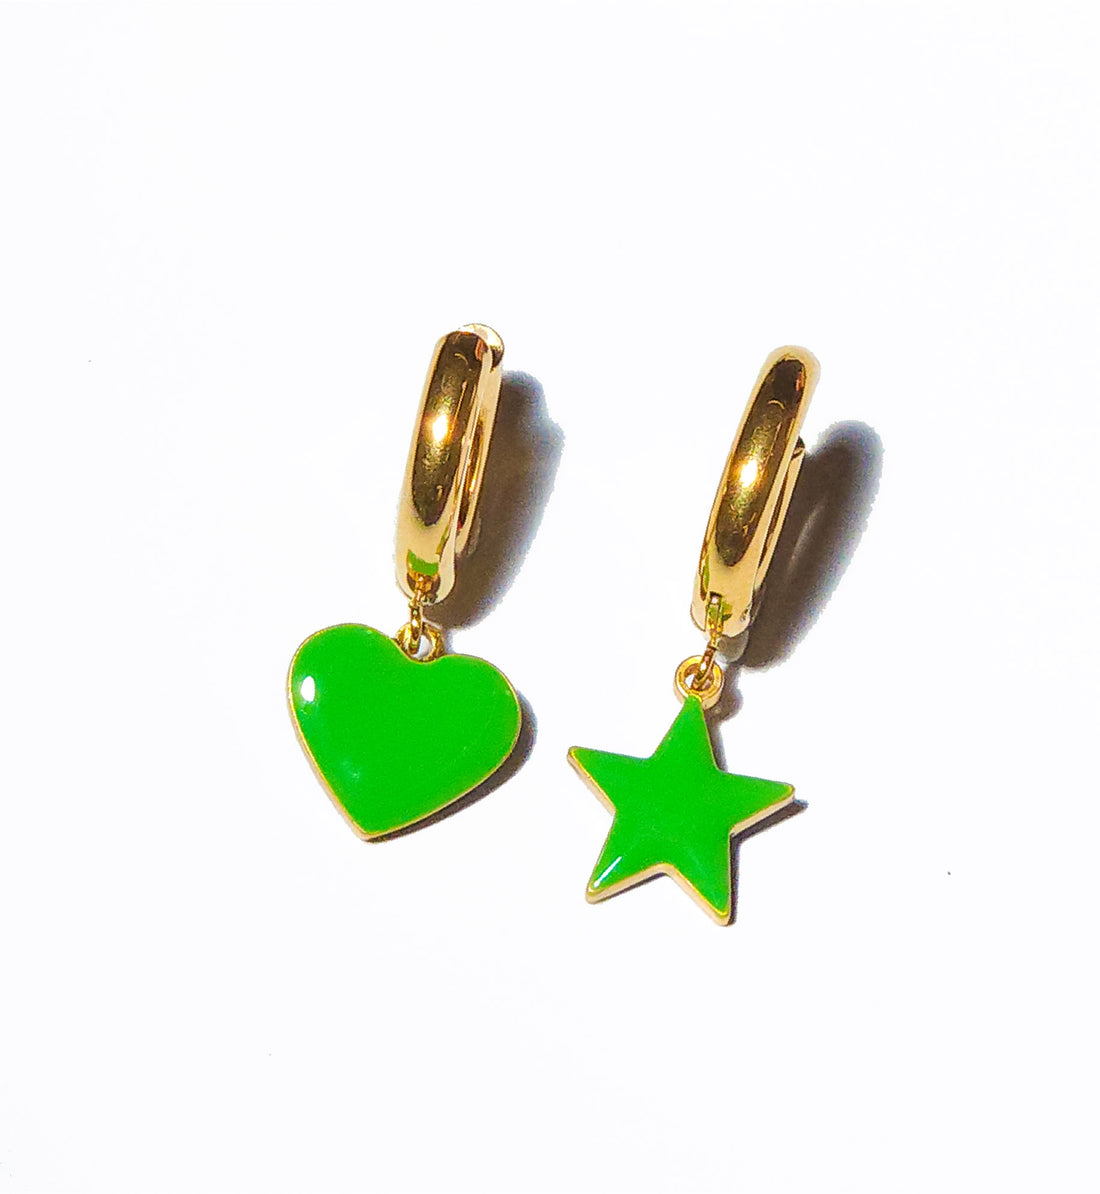 Sparkle Heart & Star / Hoops • Cobalt & Bright Green